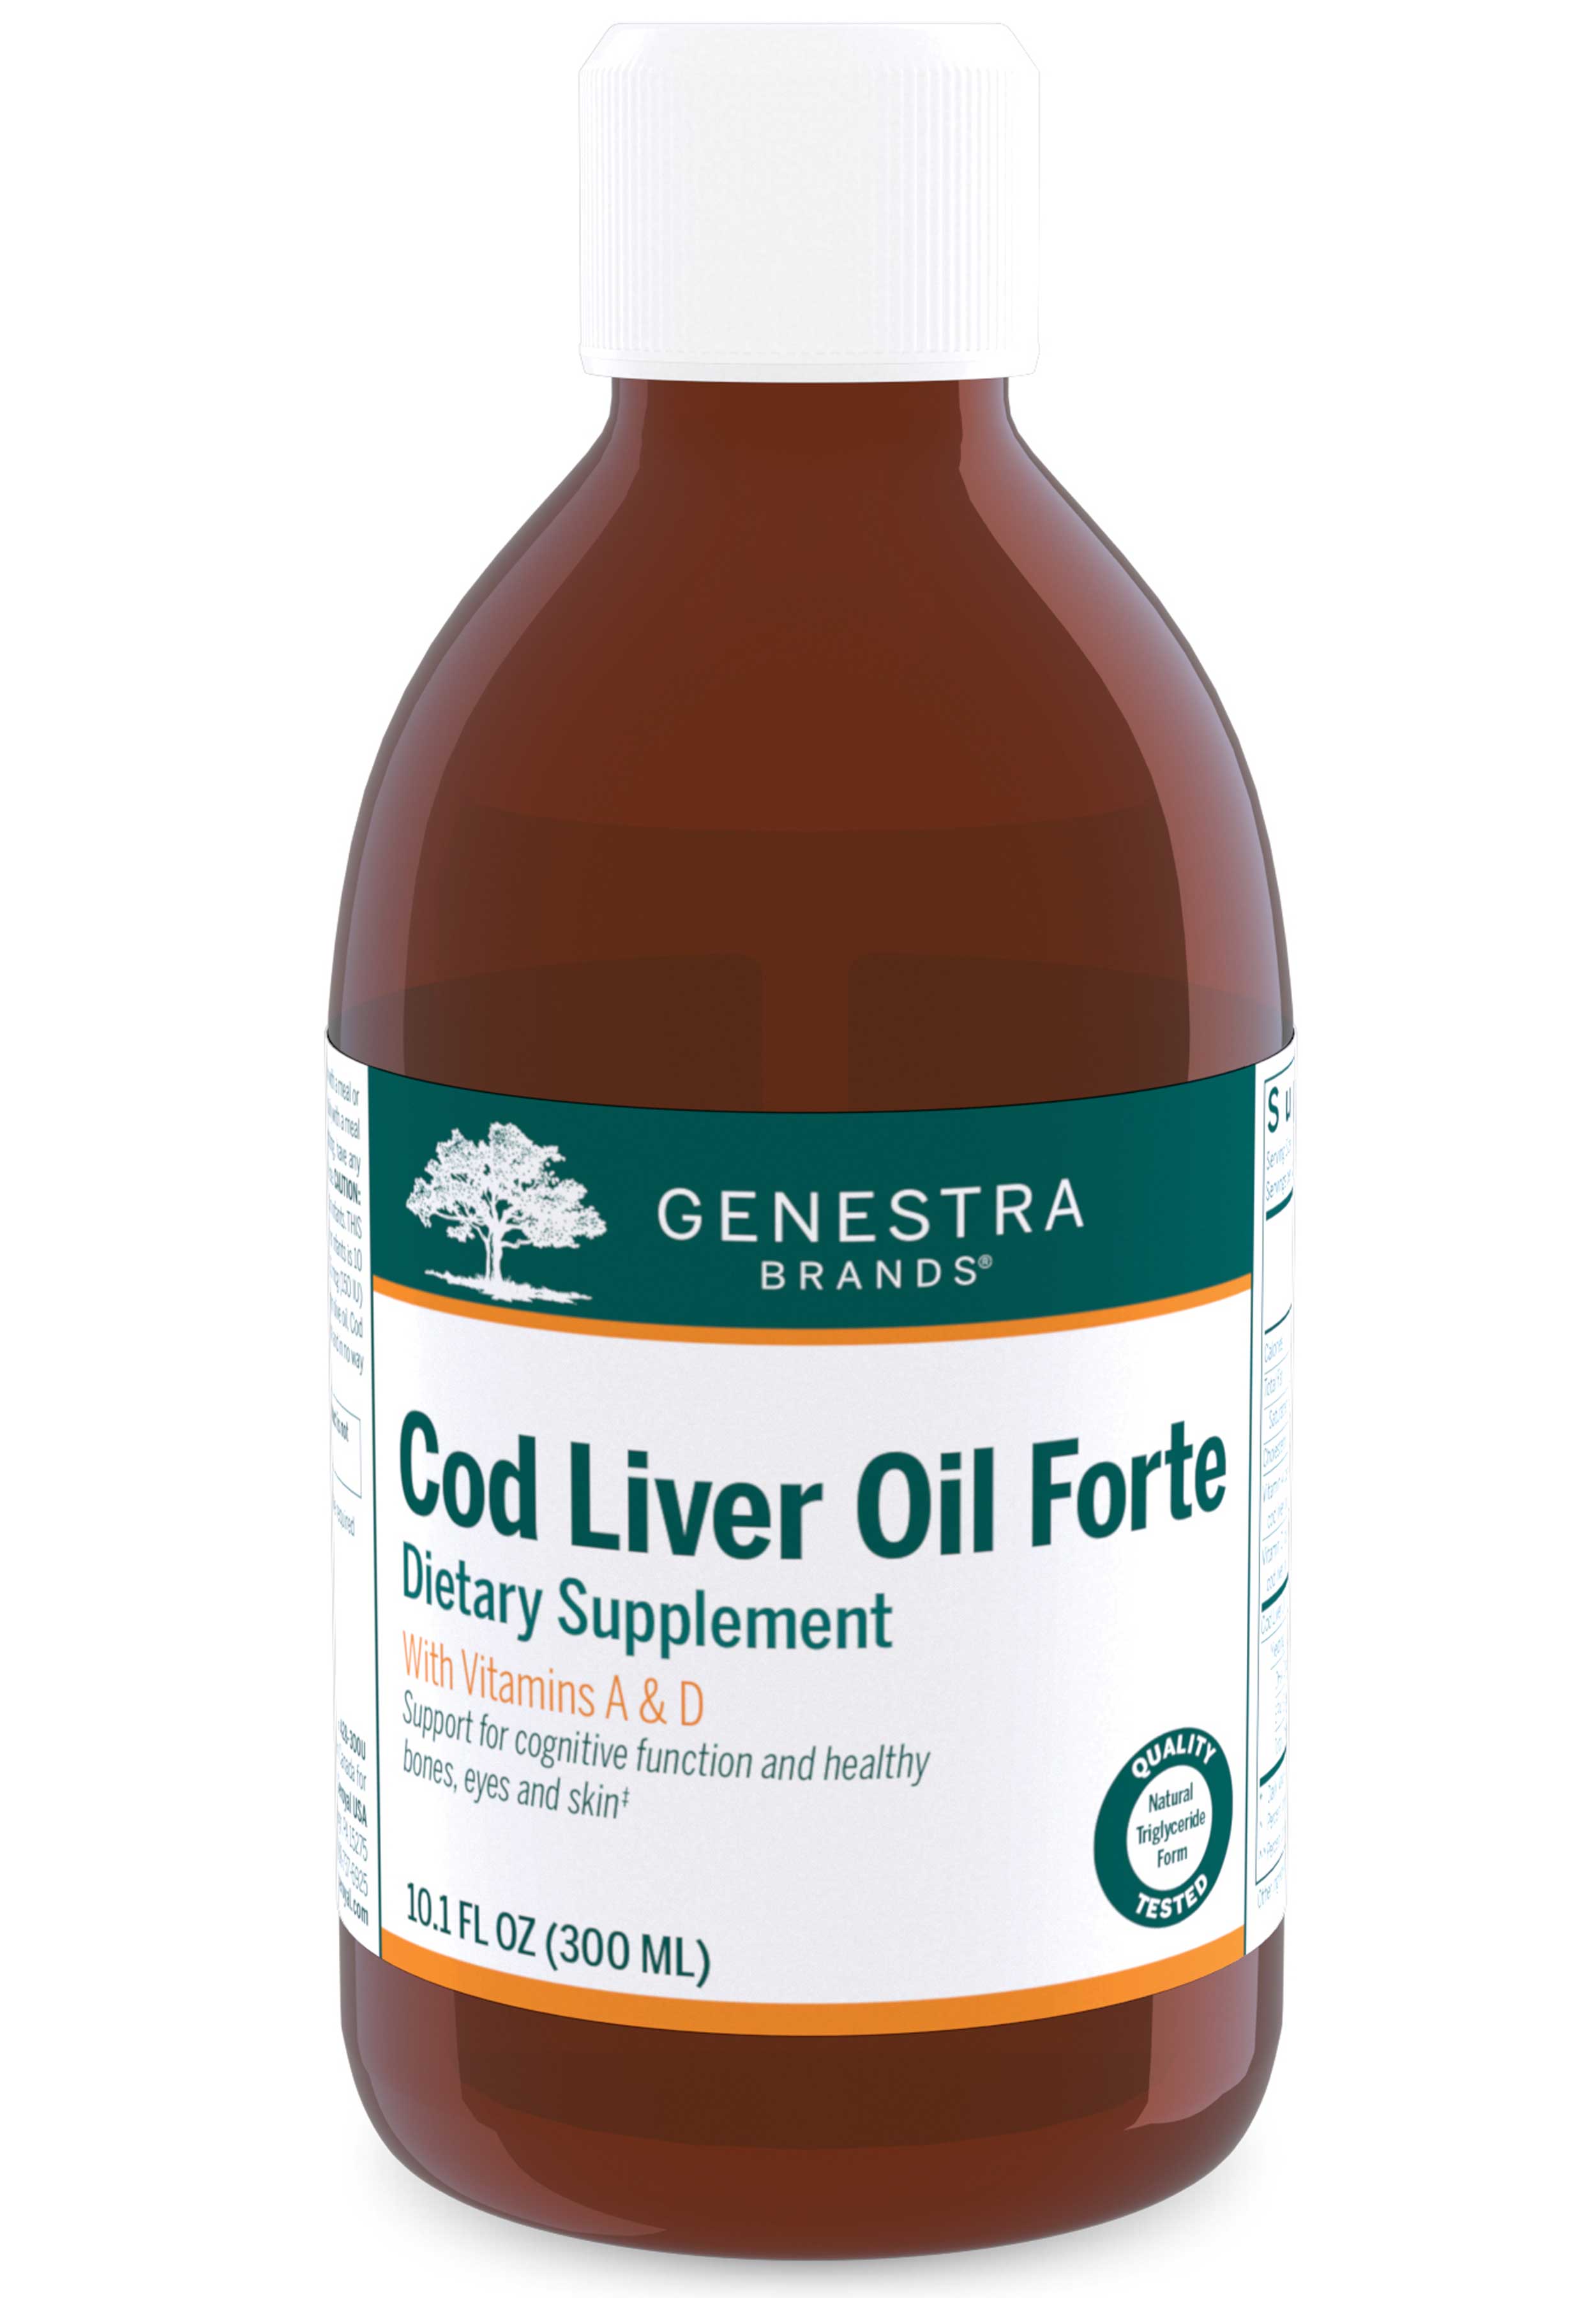 Genestra Brands Cod Liver Oil Forte